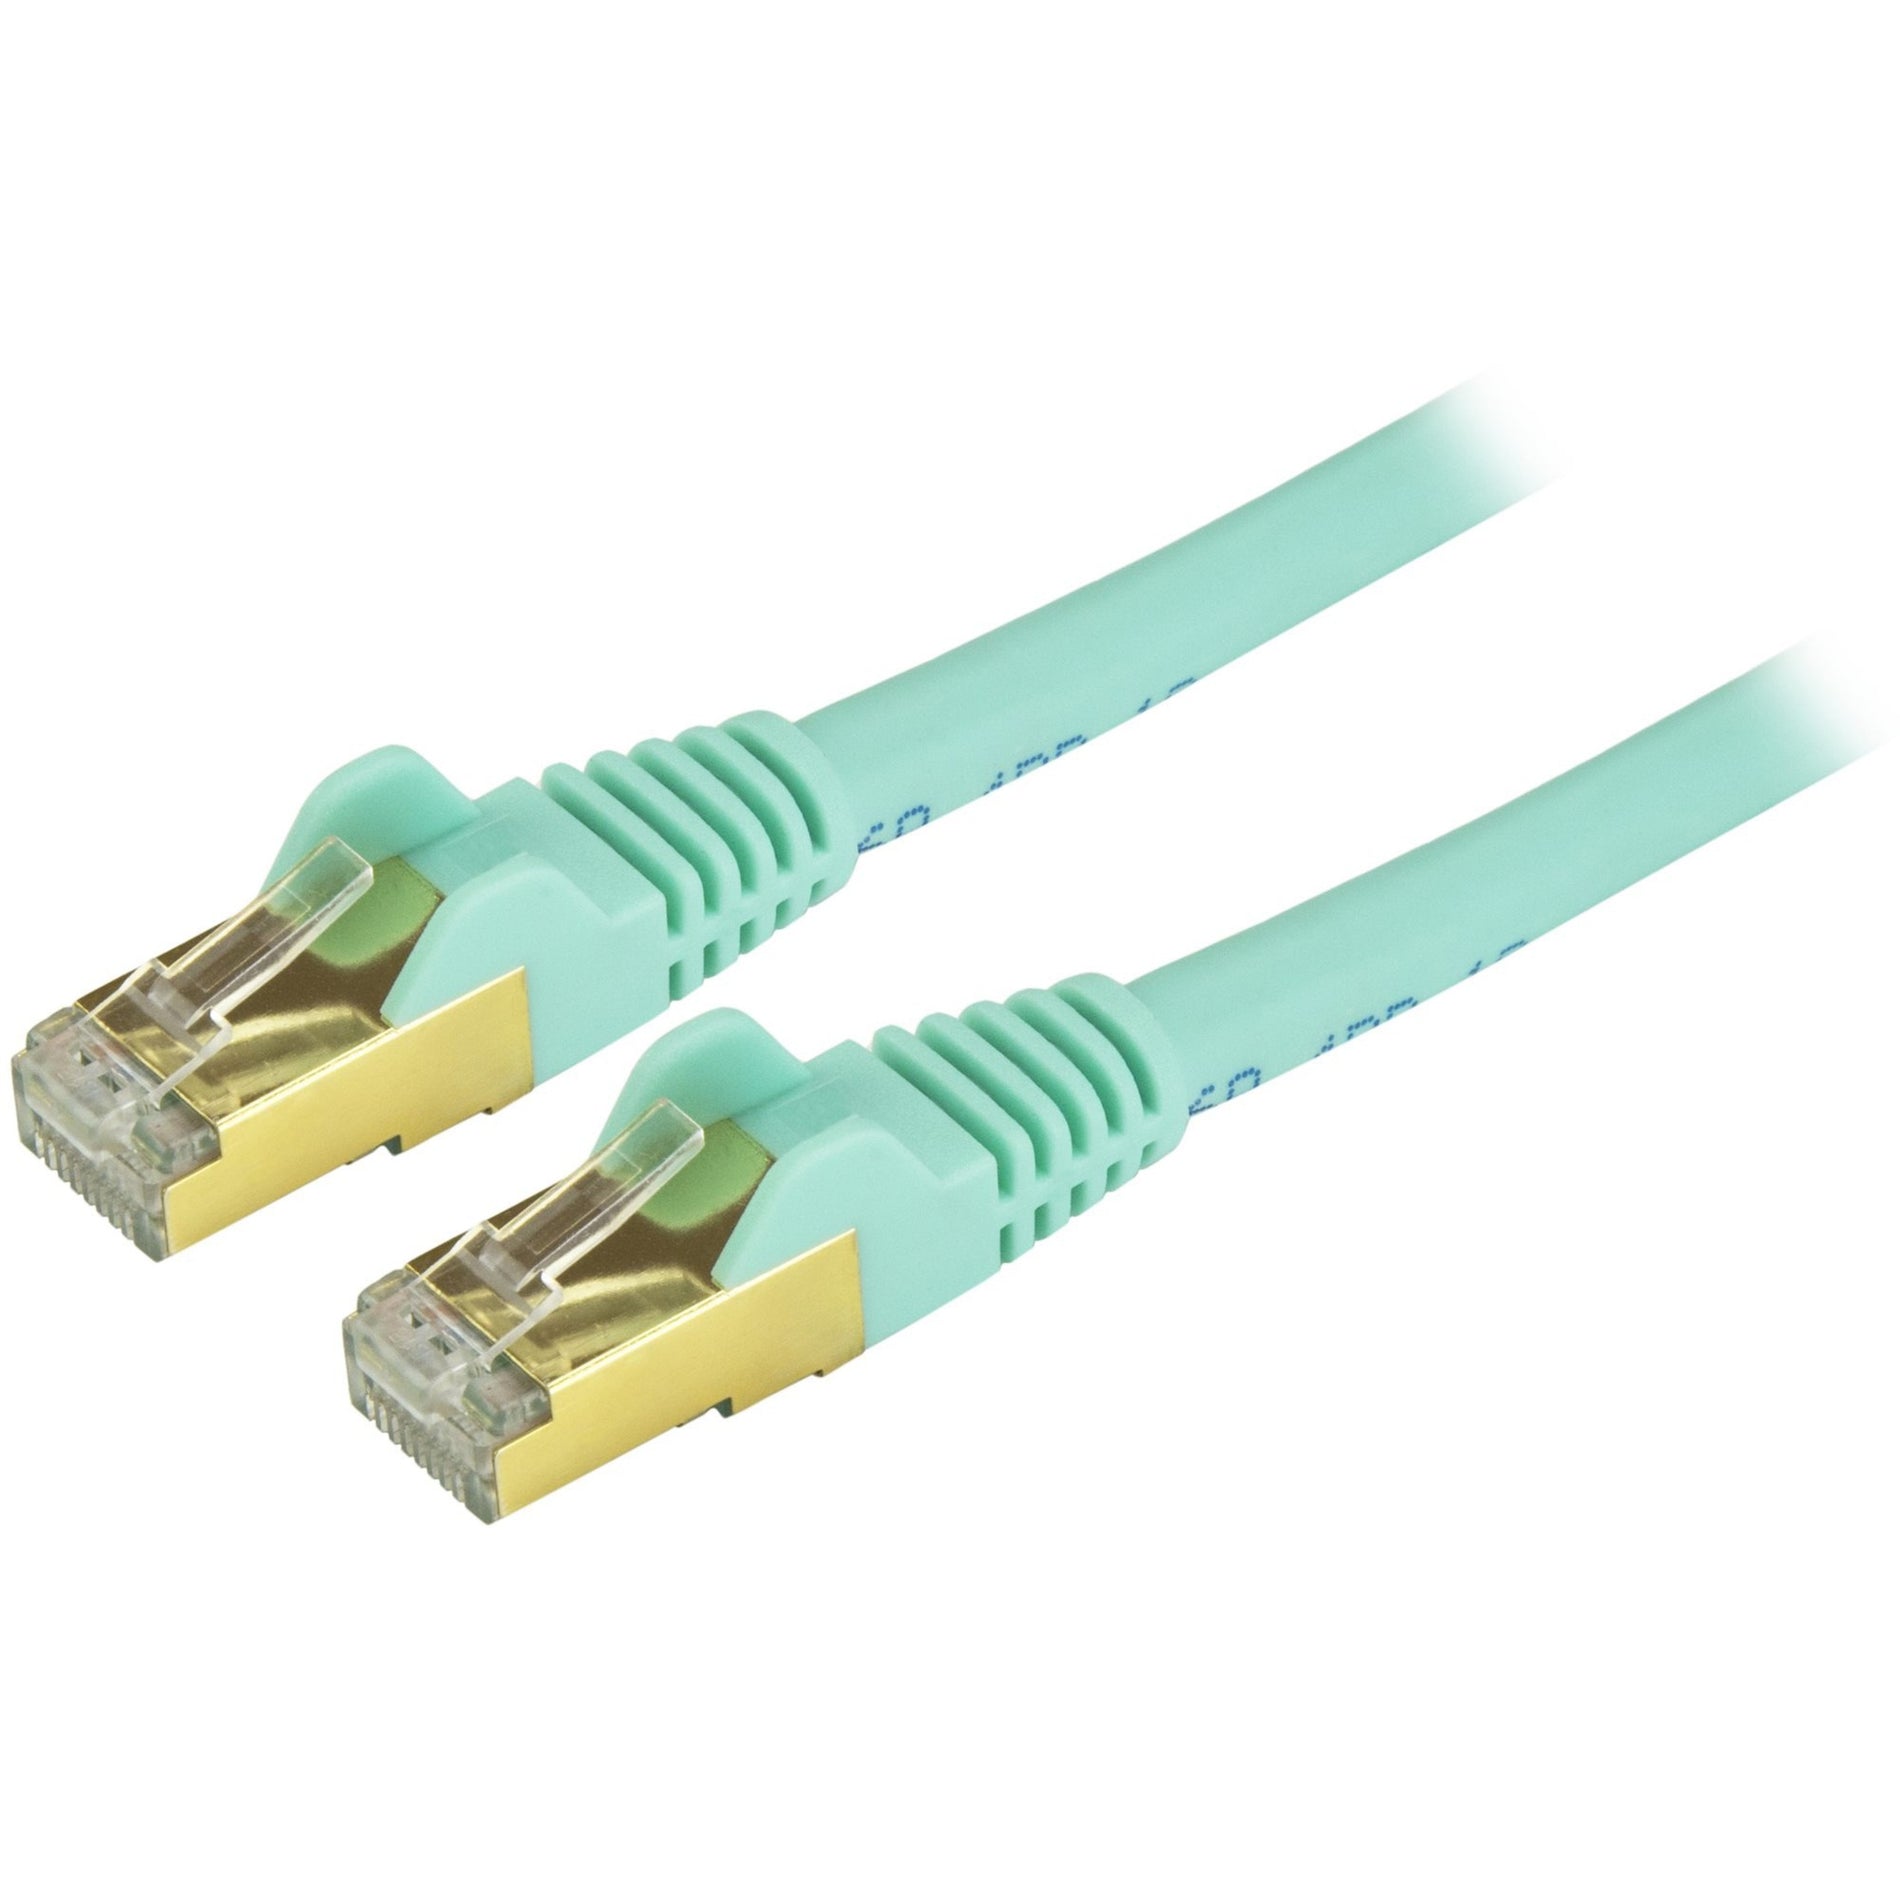 StarTech.com C6ASPAT10AQ Cable de parche Ethernet Cat6a - Blindado (STP) - 10 ft. Aqua Cordón Ethernet RJ45 sin enganches